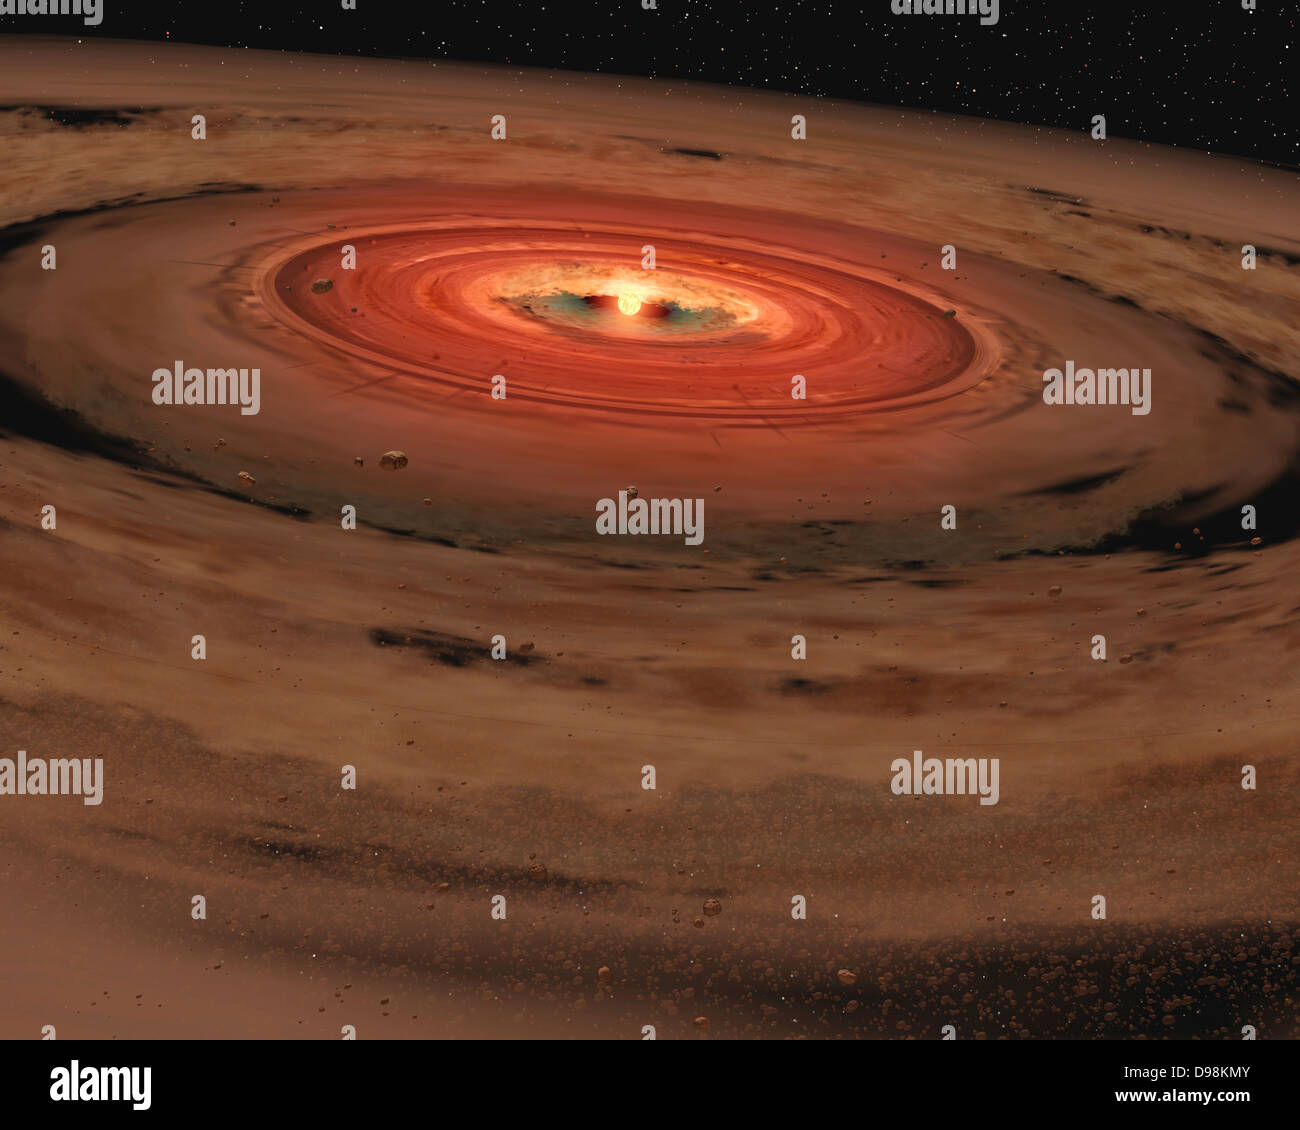 Artista della impressione che mostra una nana bruna circondato da un disco di vorticazione del pianeta-costruzione di polvere. NASA il telescopio spaziale Spitzer Foto Stock